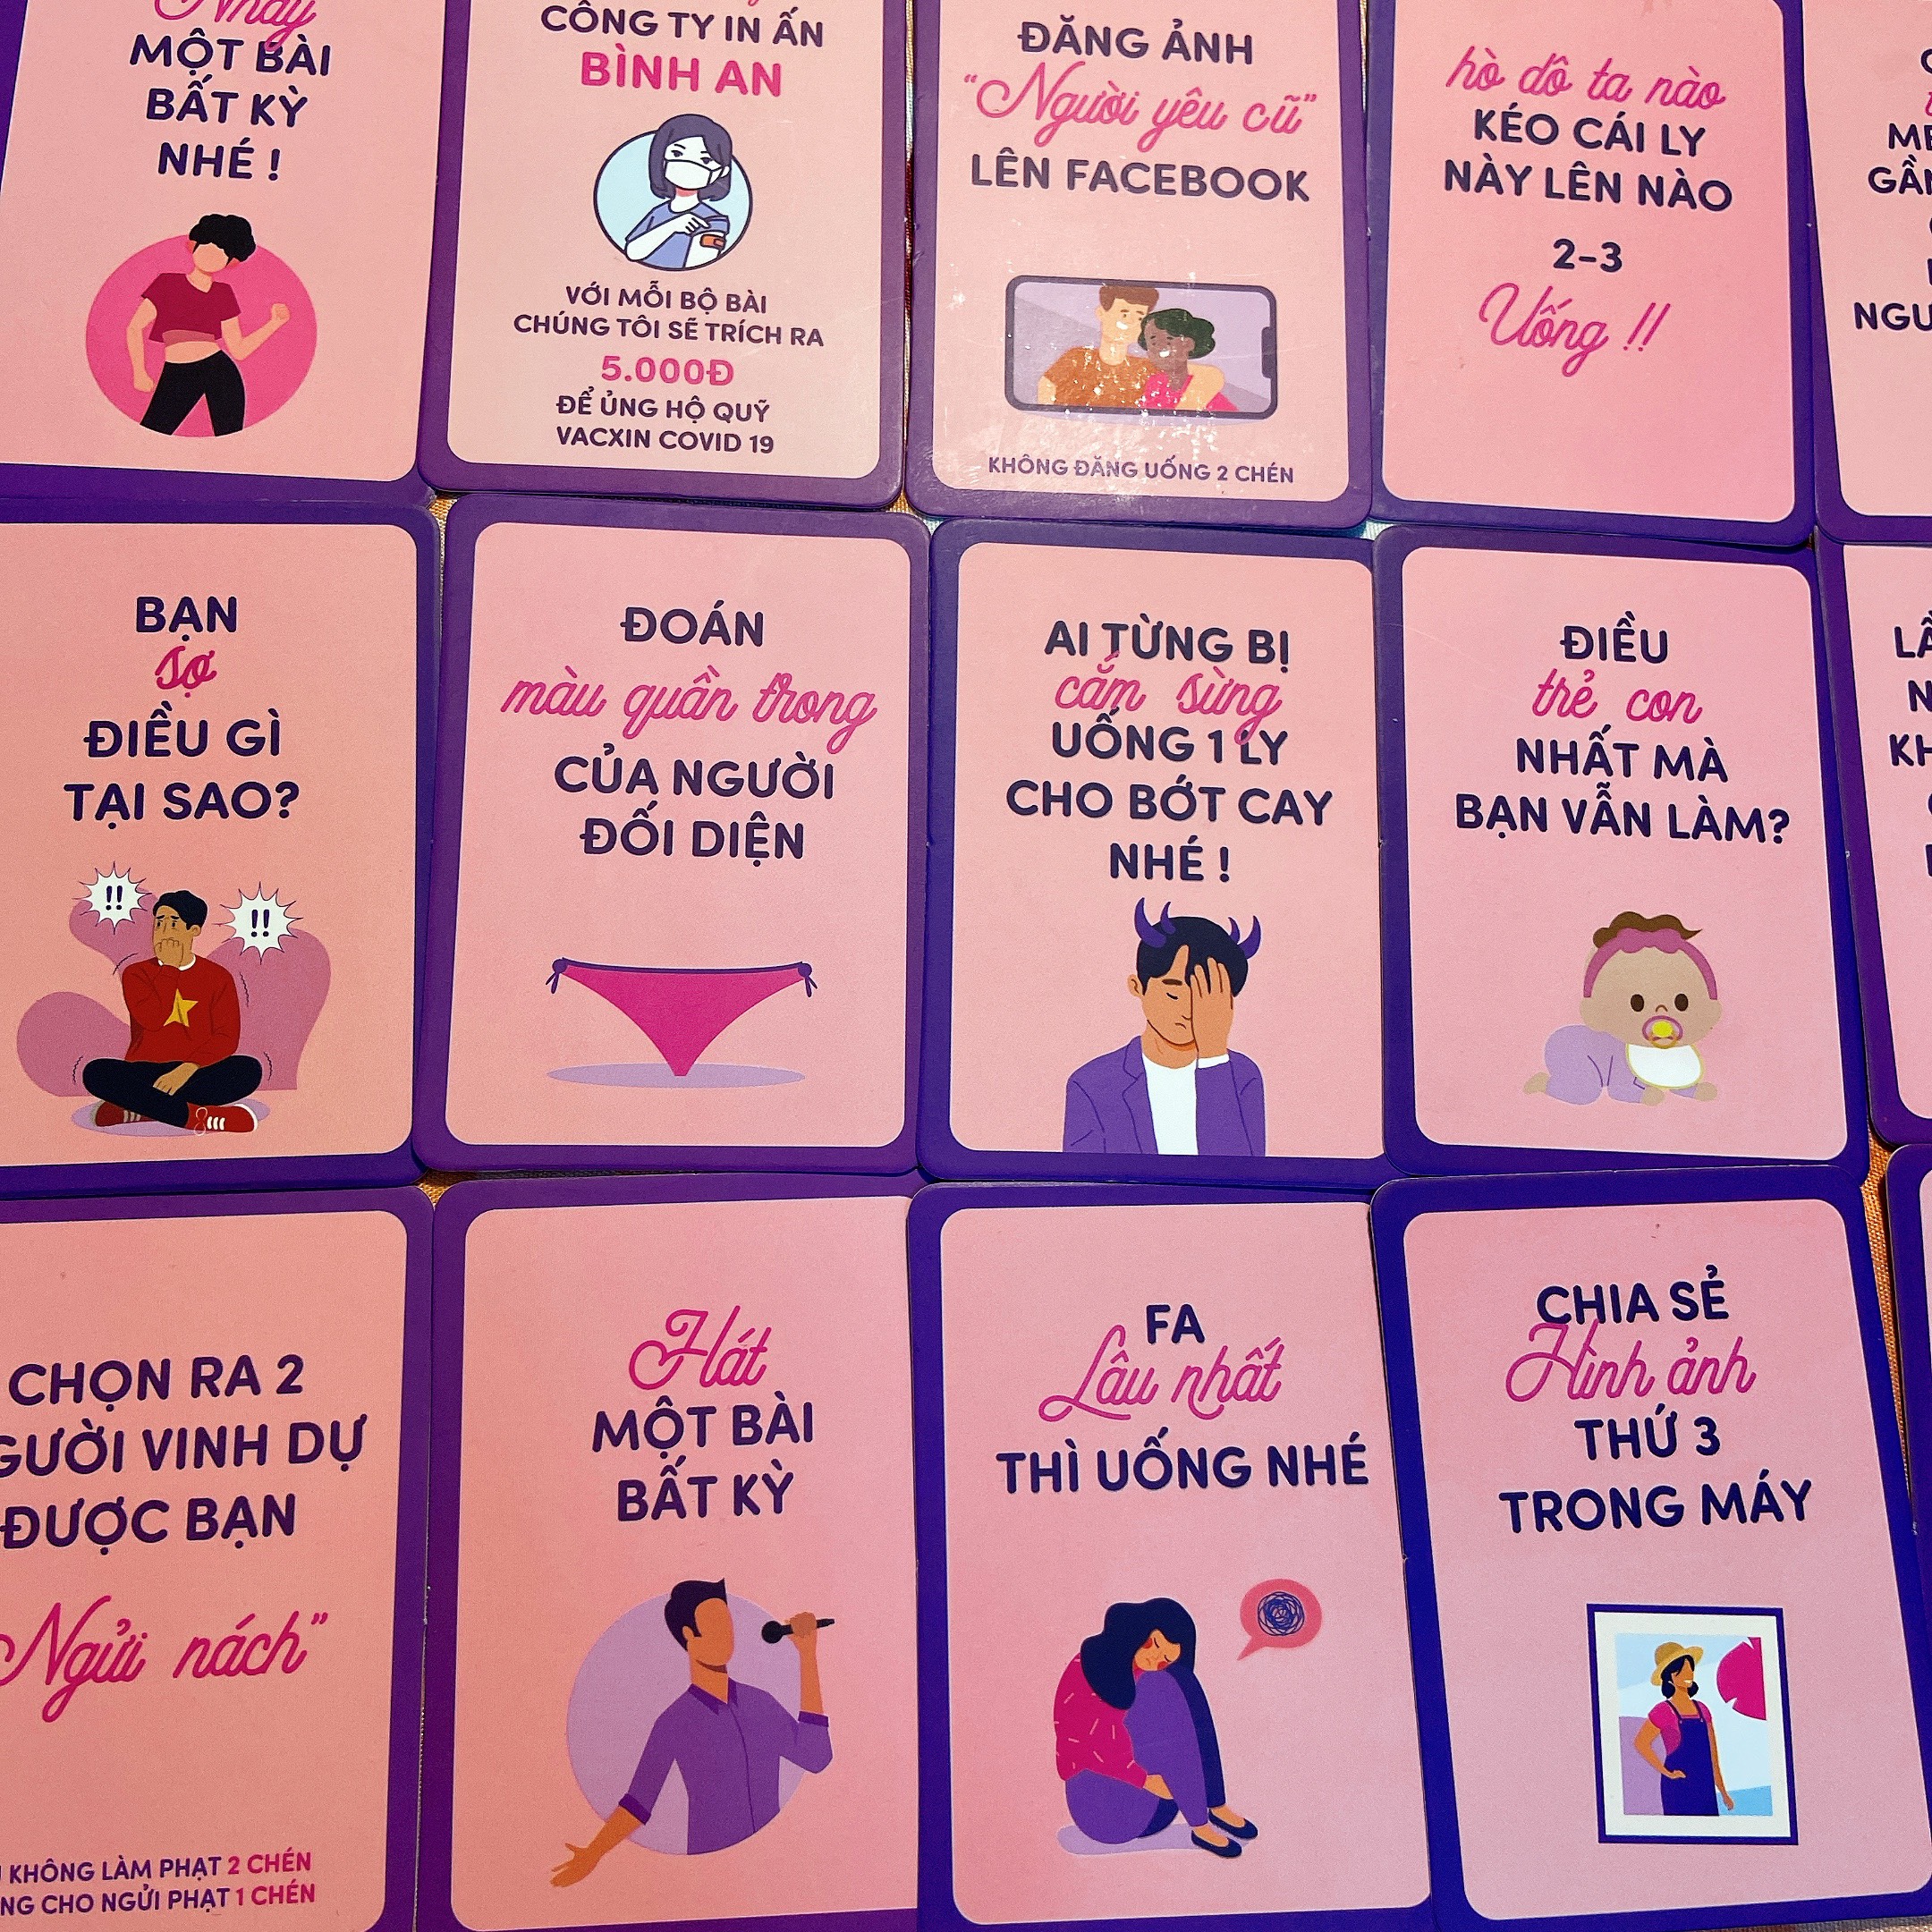 Bộ bài Drinking game huệ nốc out tổng hợp 83 lá bài cho cặp đôi nhóm bùng nổ cuộc vui